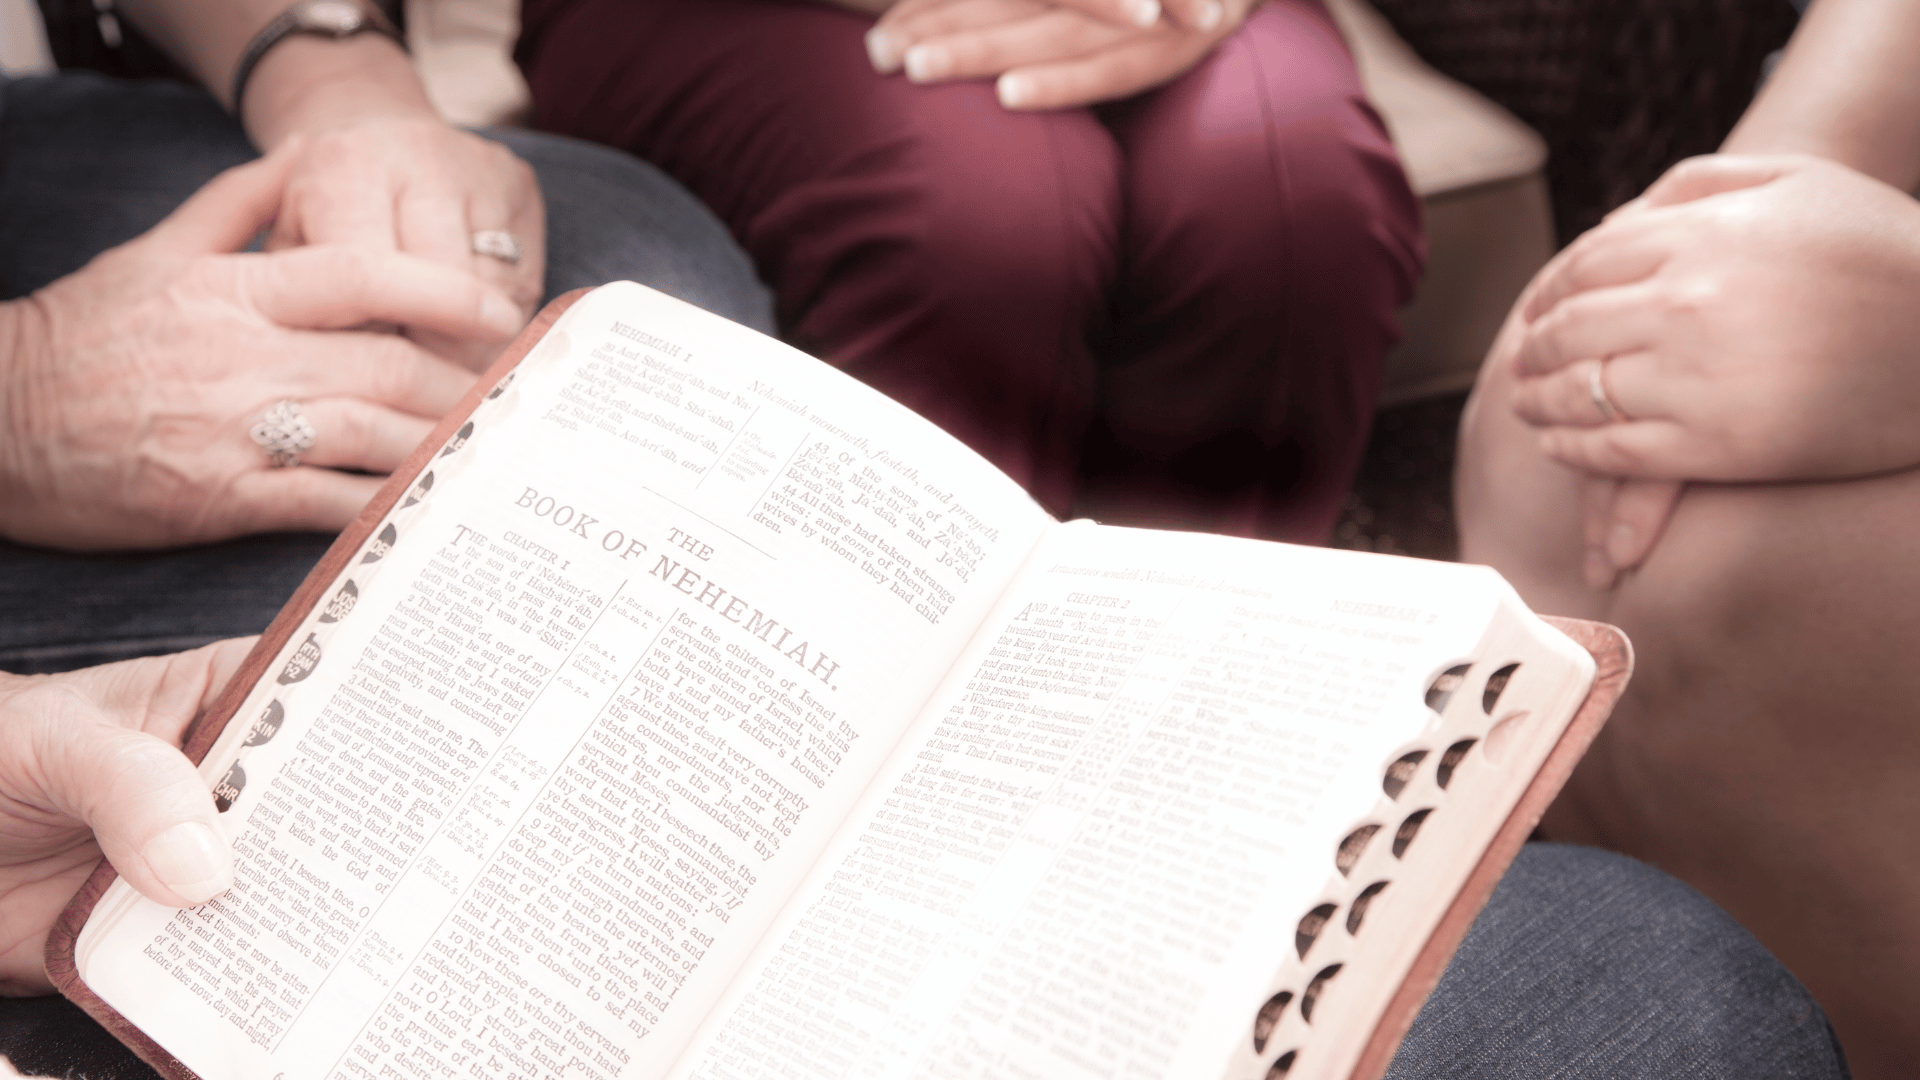 Círculo de pessoas sentadas com as mãos sobre os joelhos em volta de uma pessoa que lê o Livro de Neemias da Bíblia sagrada.